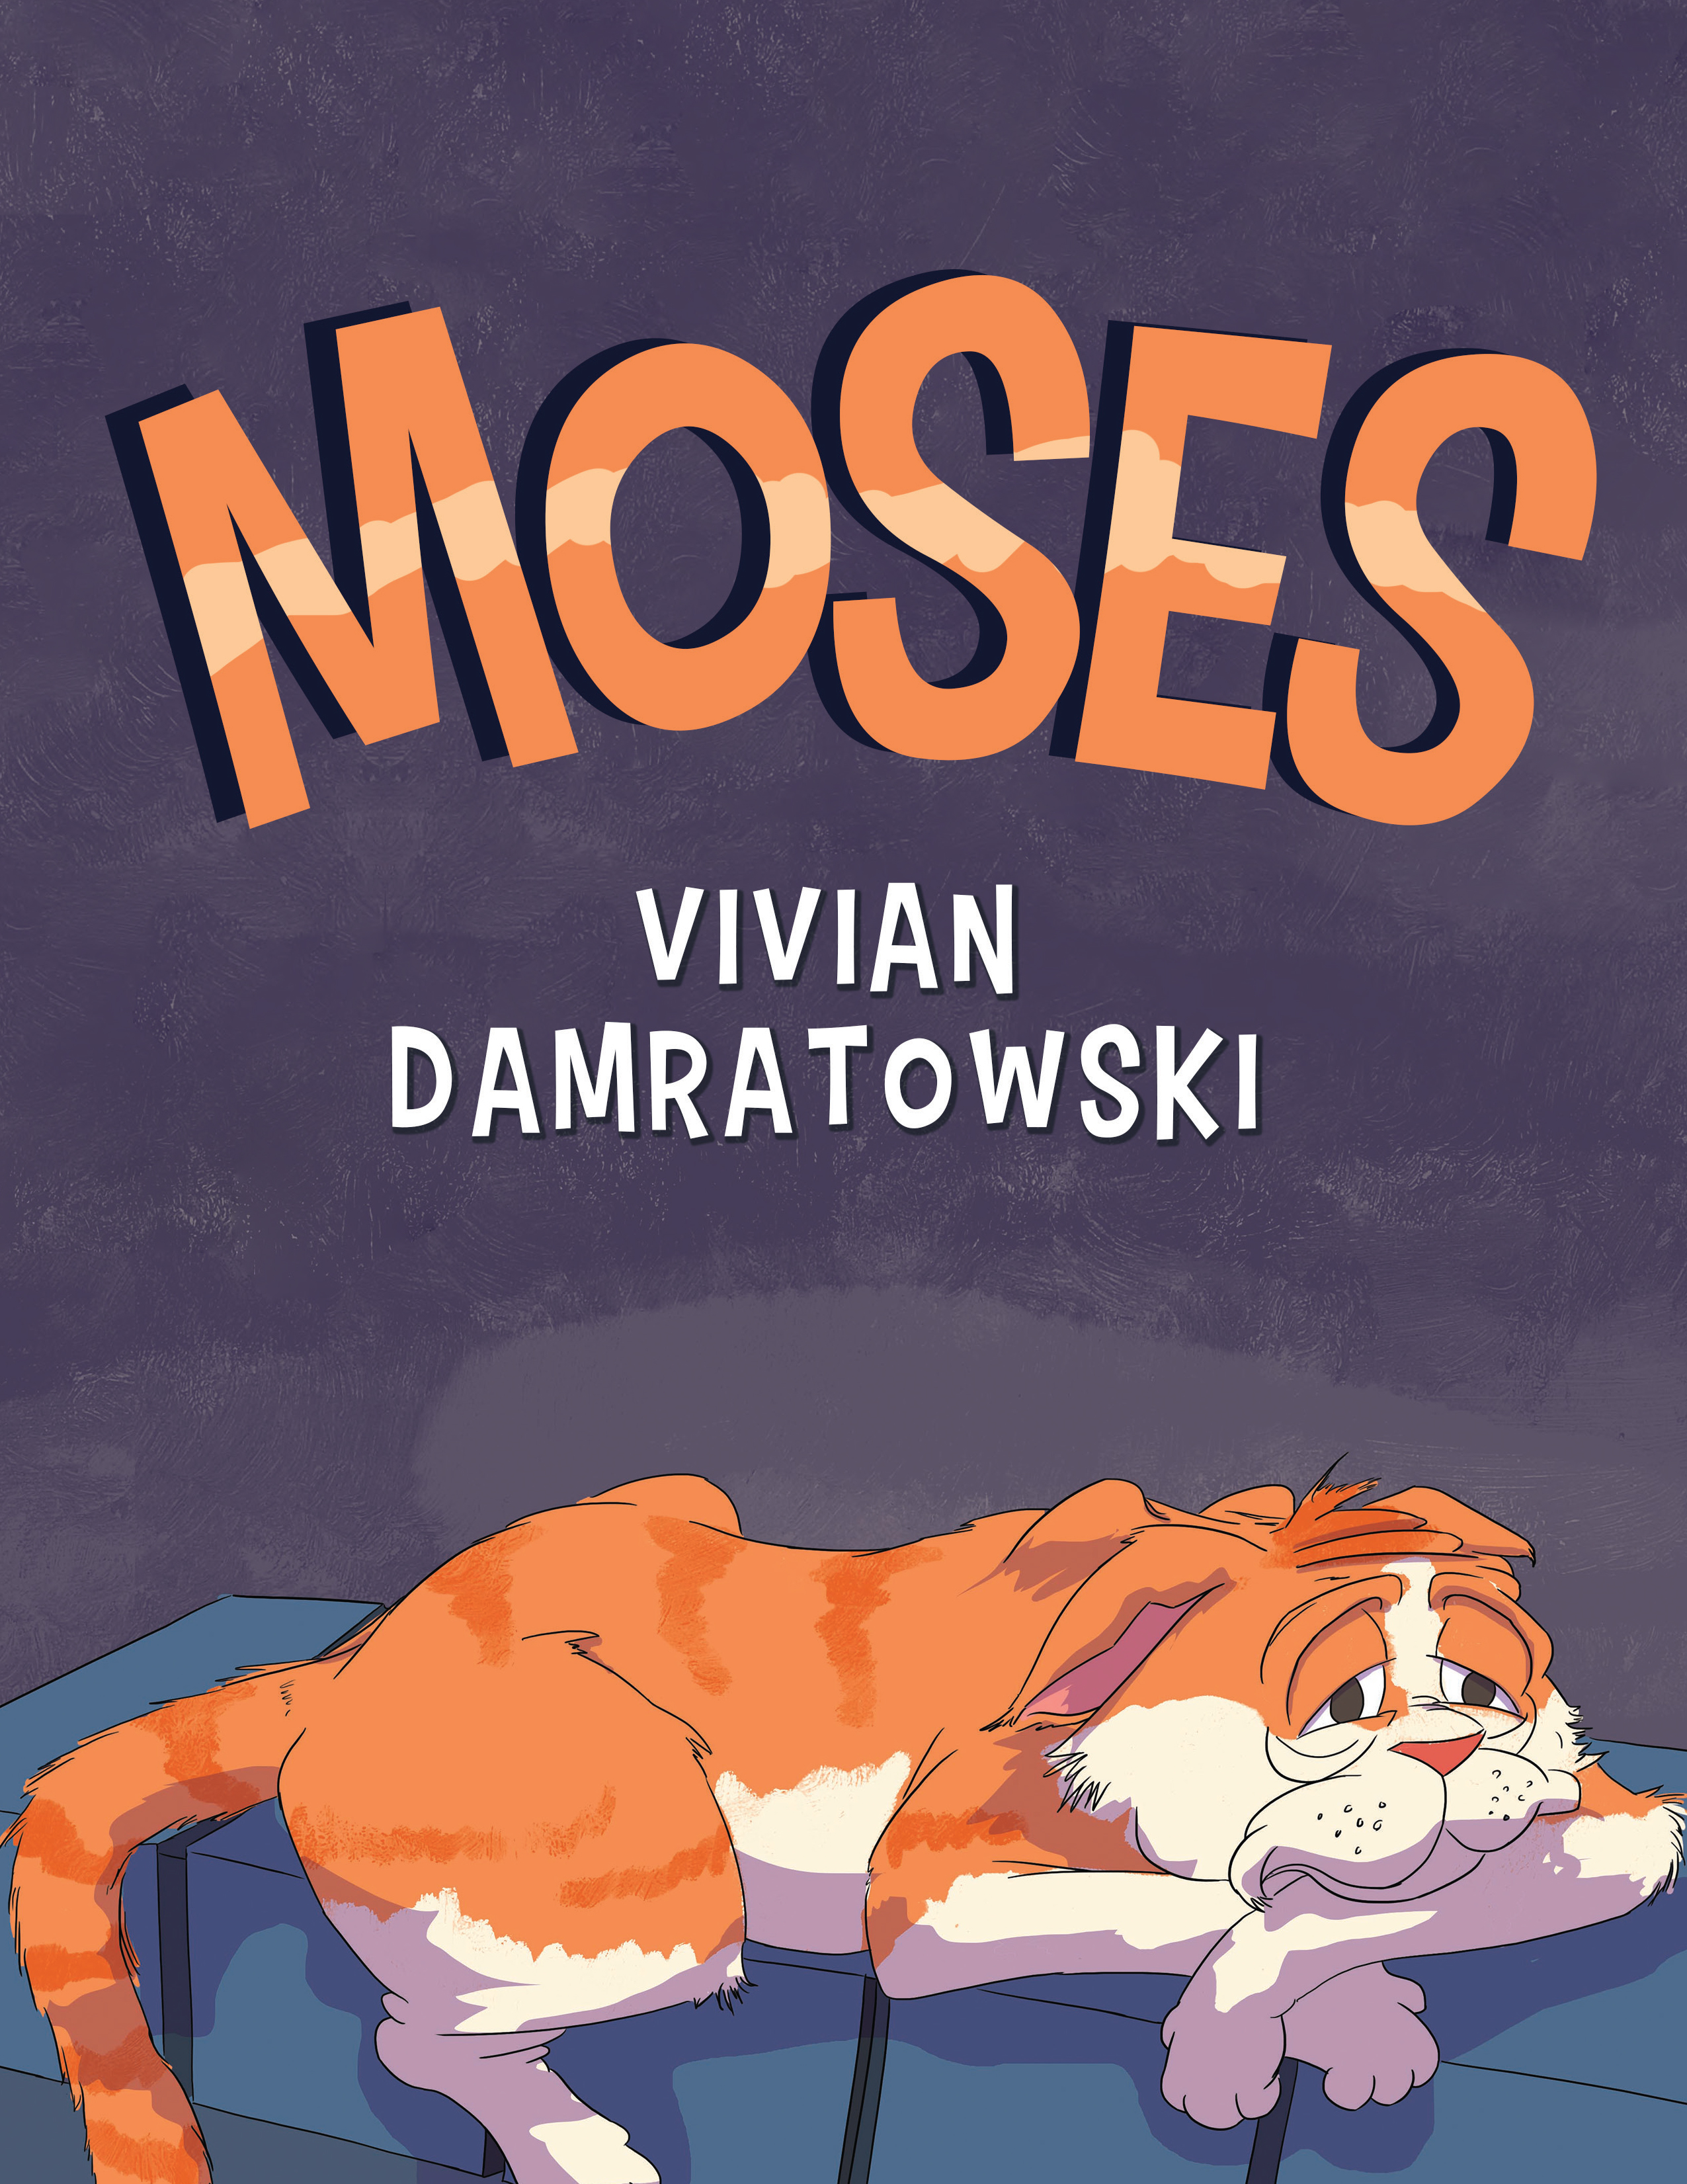 Author Vivian Damratowski Pens a Vivid Children’s Tale about a Hero Cat